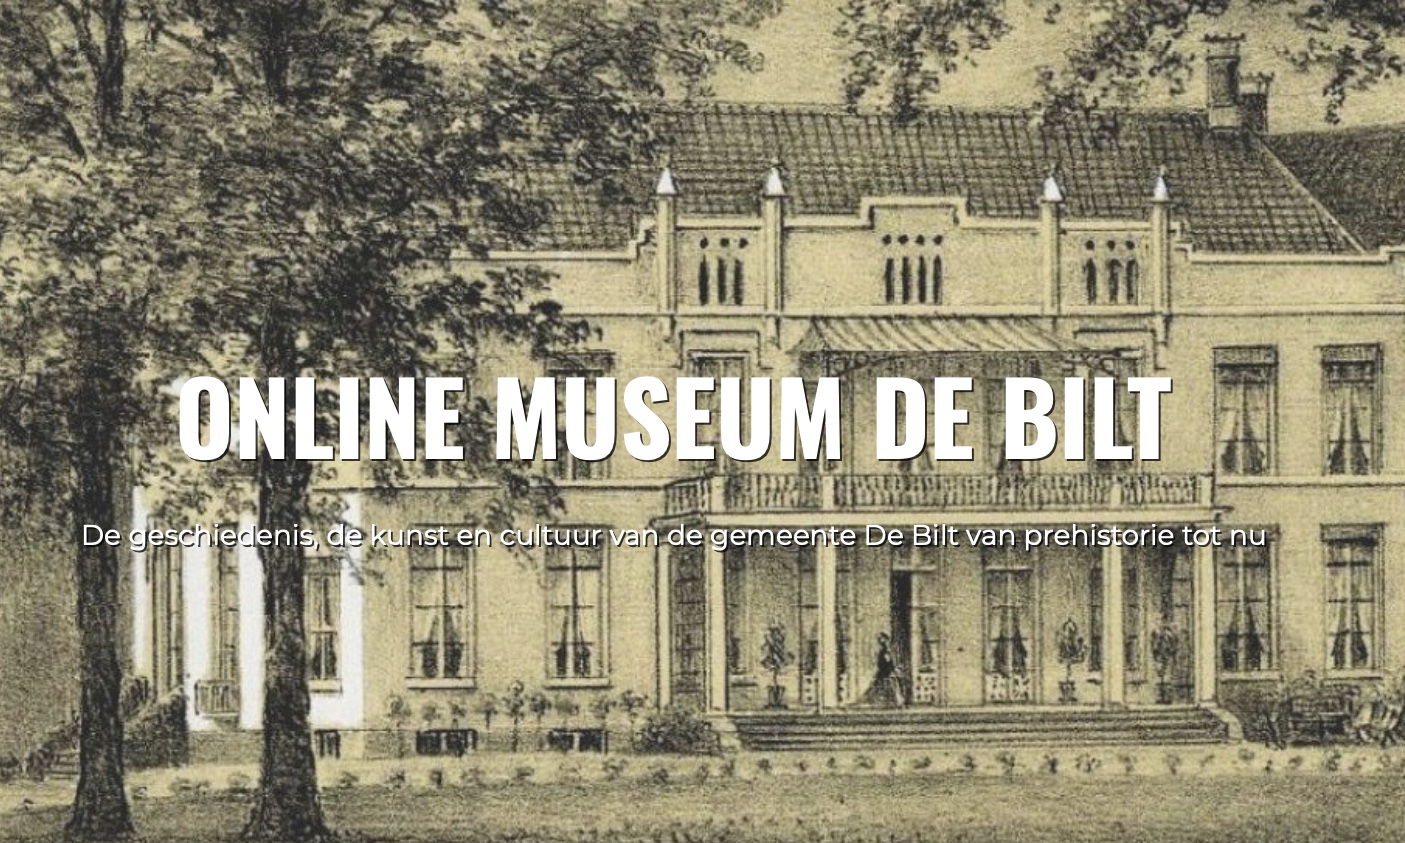 Online Museum De Bilt